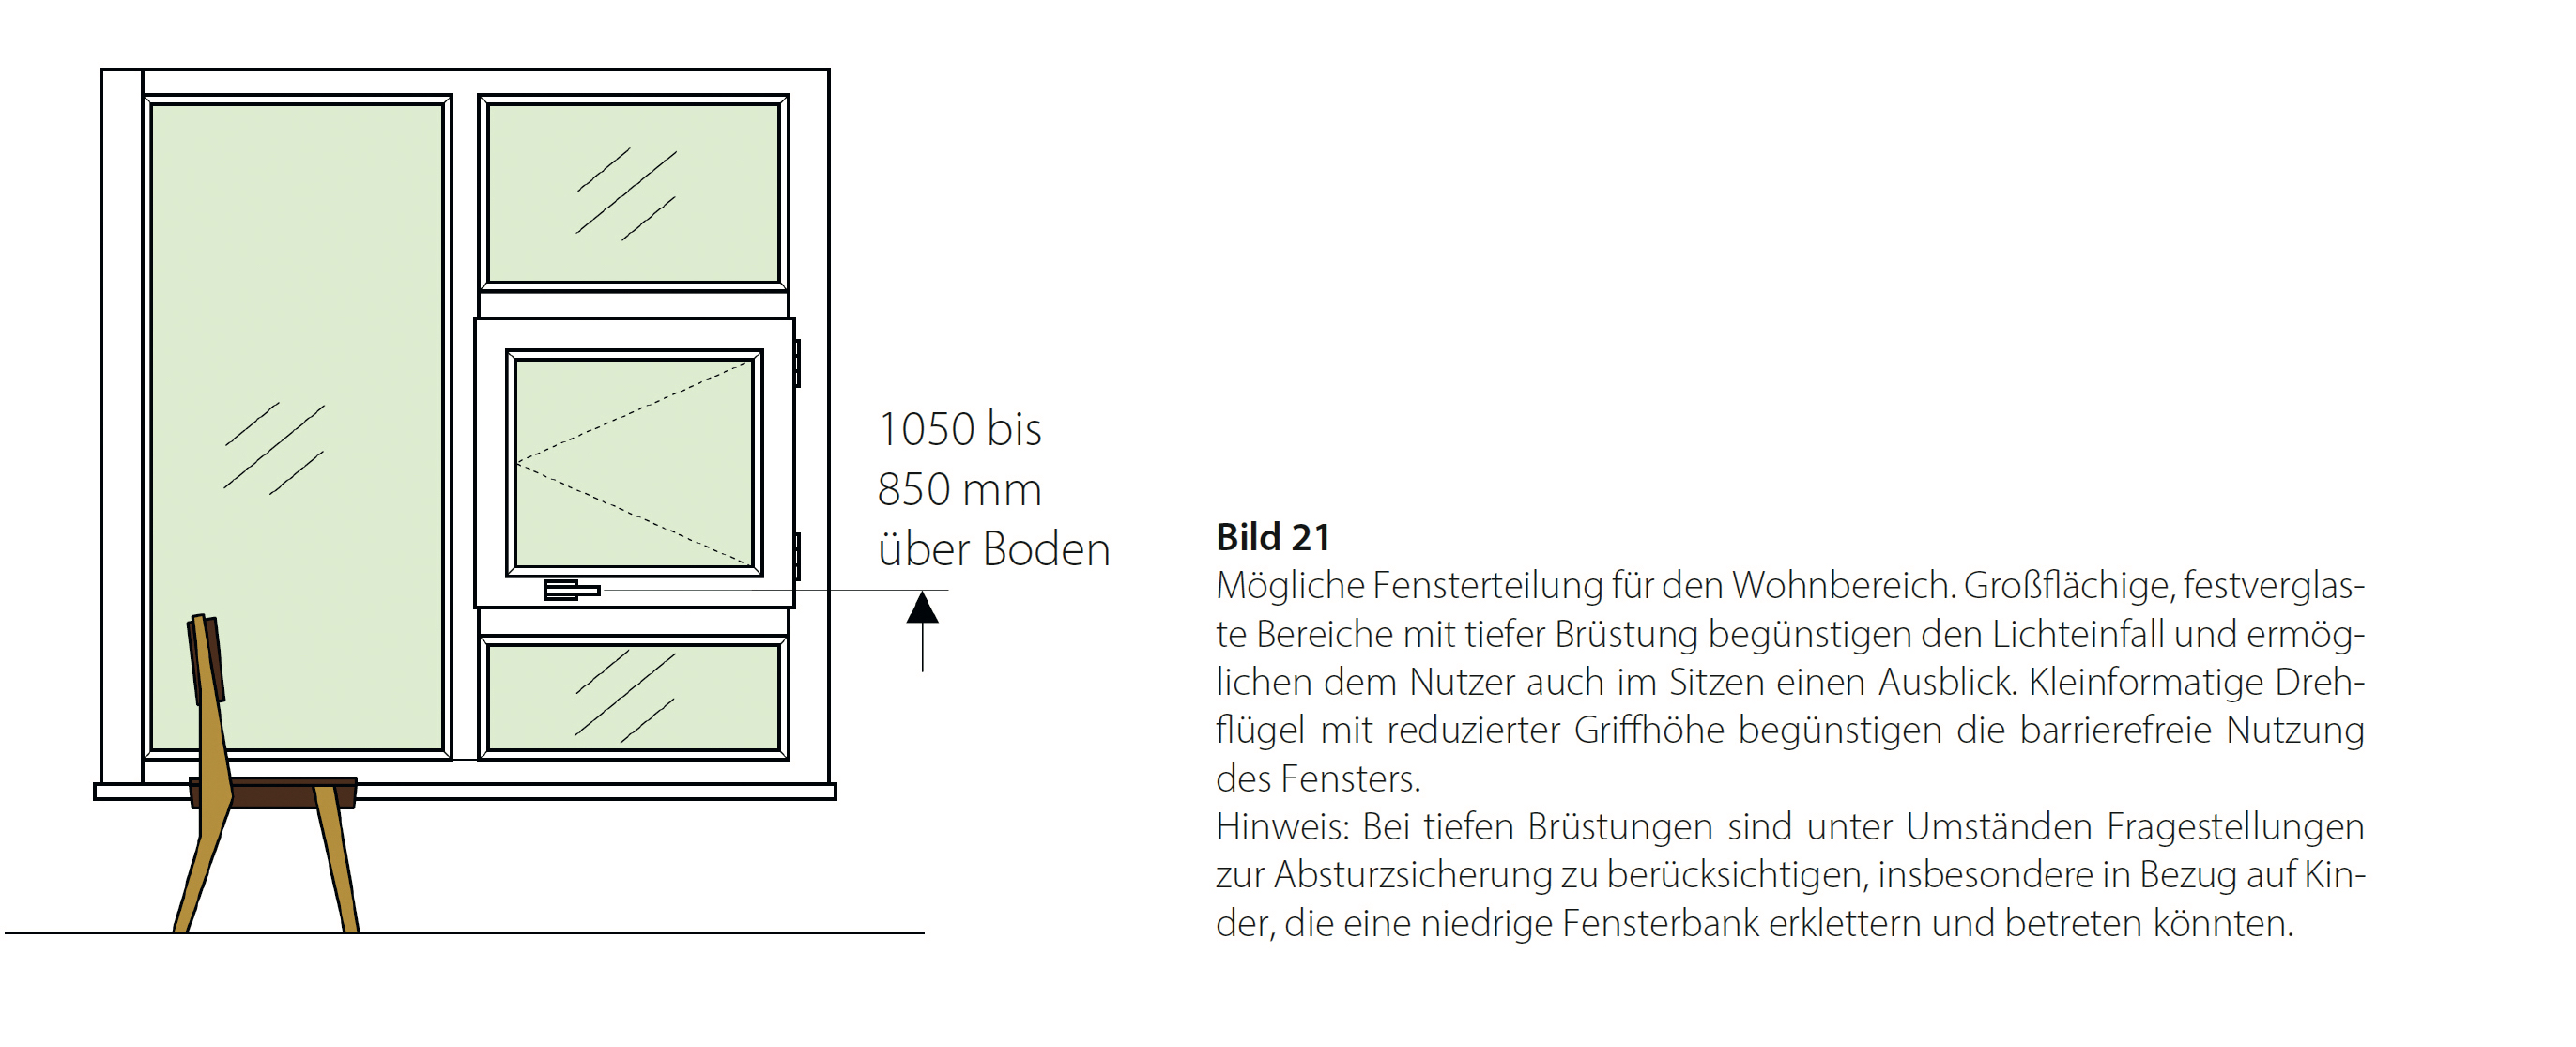 PM-2022-VFF-Huerden im Haus abbauen Bild 2 Bildquelle ift Rosenheim.